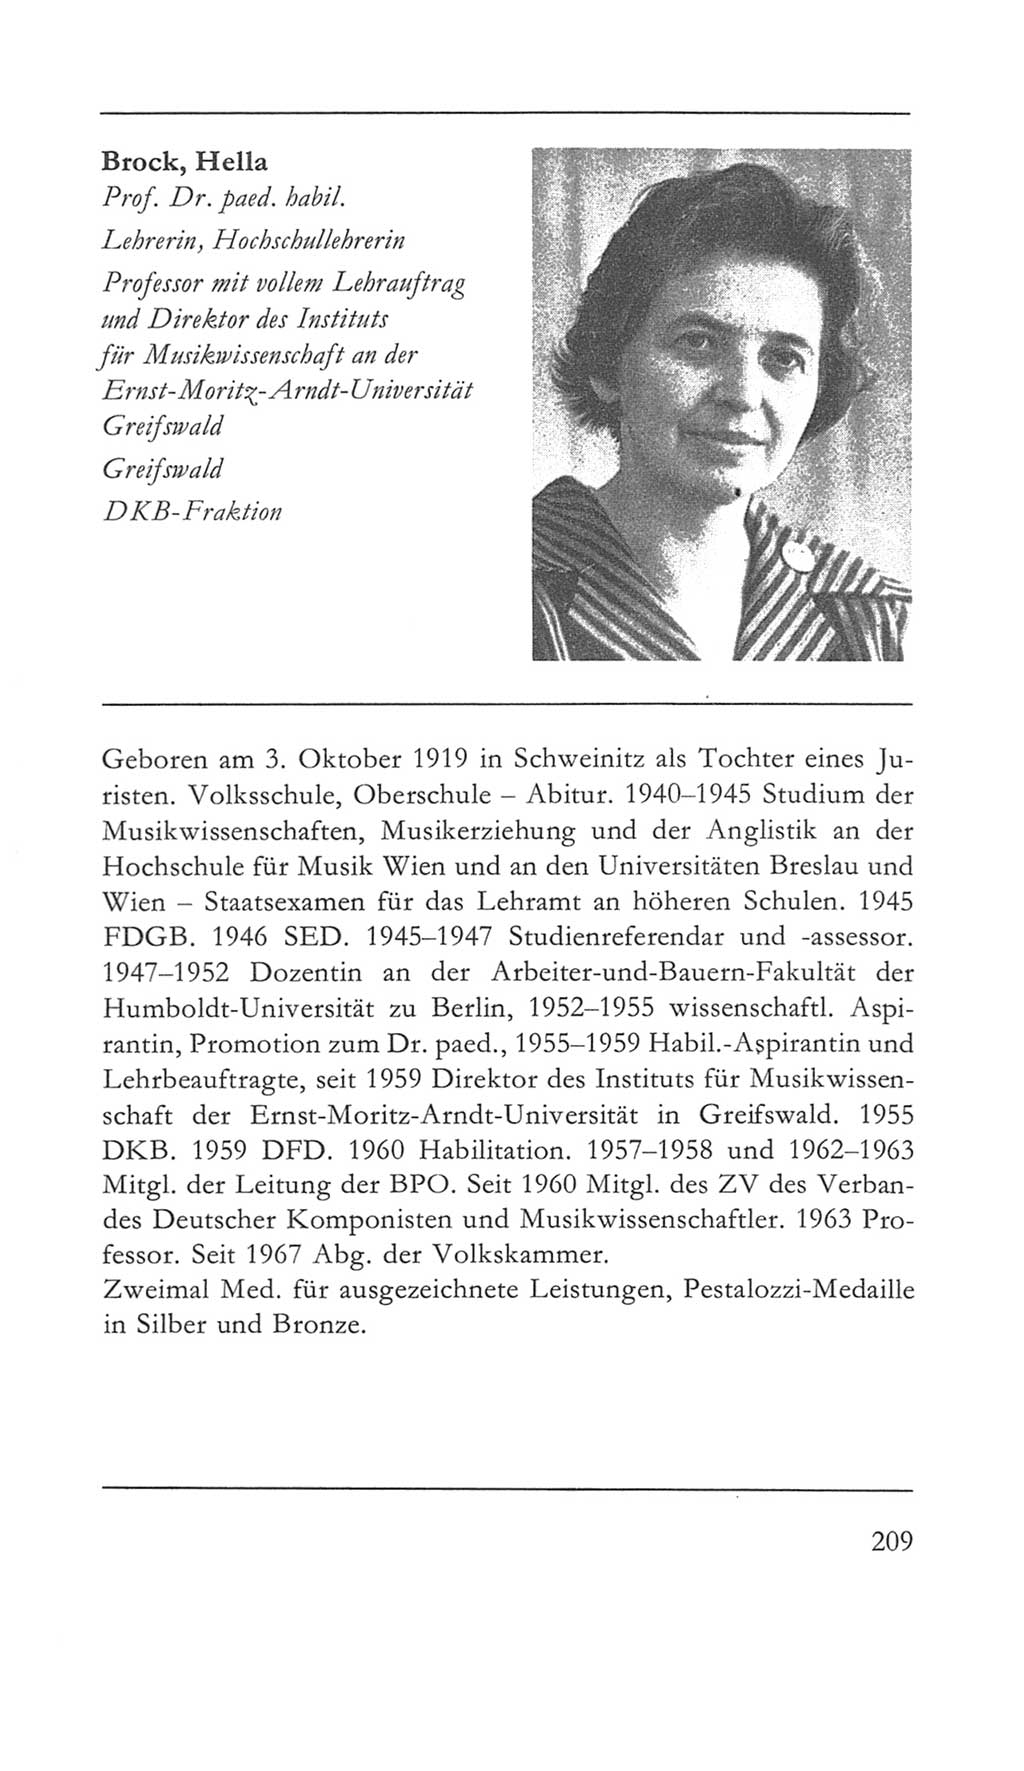 Volkskammer (VK) der Deutschen Demokratischen Republik (DDR) 5. Wahlperiode 1967-1971, Seite 209 (VK. DDR 5. WP. 1967-1971, S. 209)